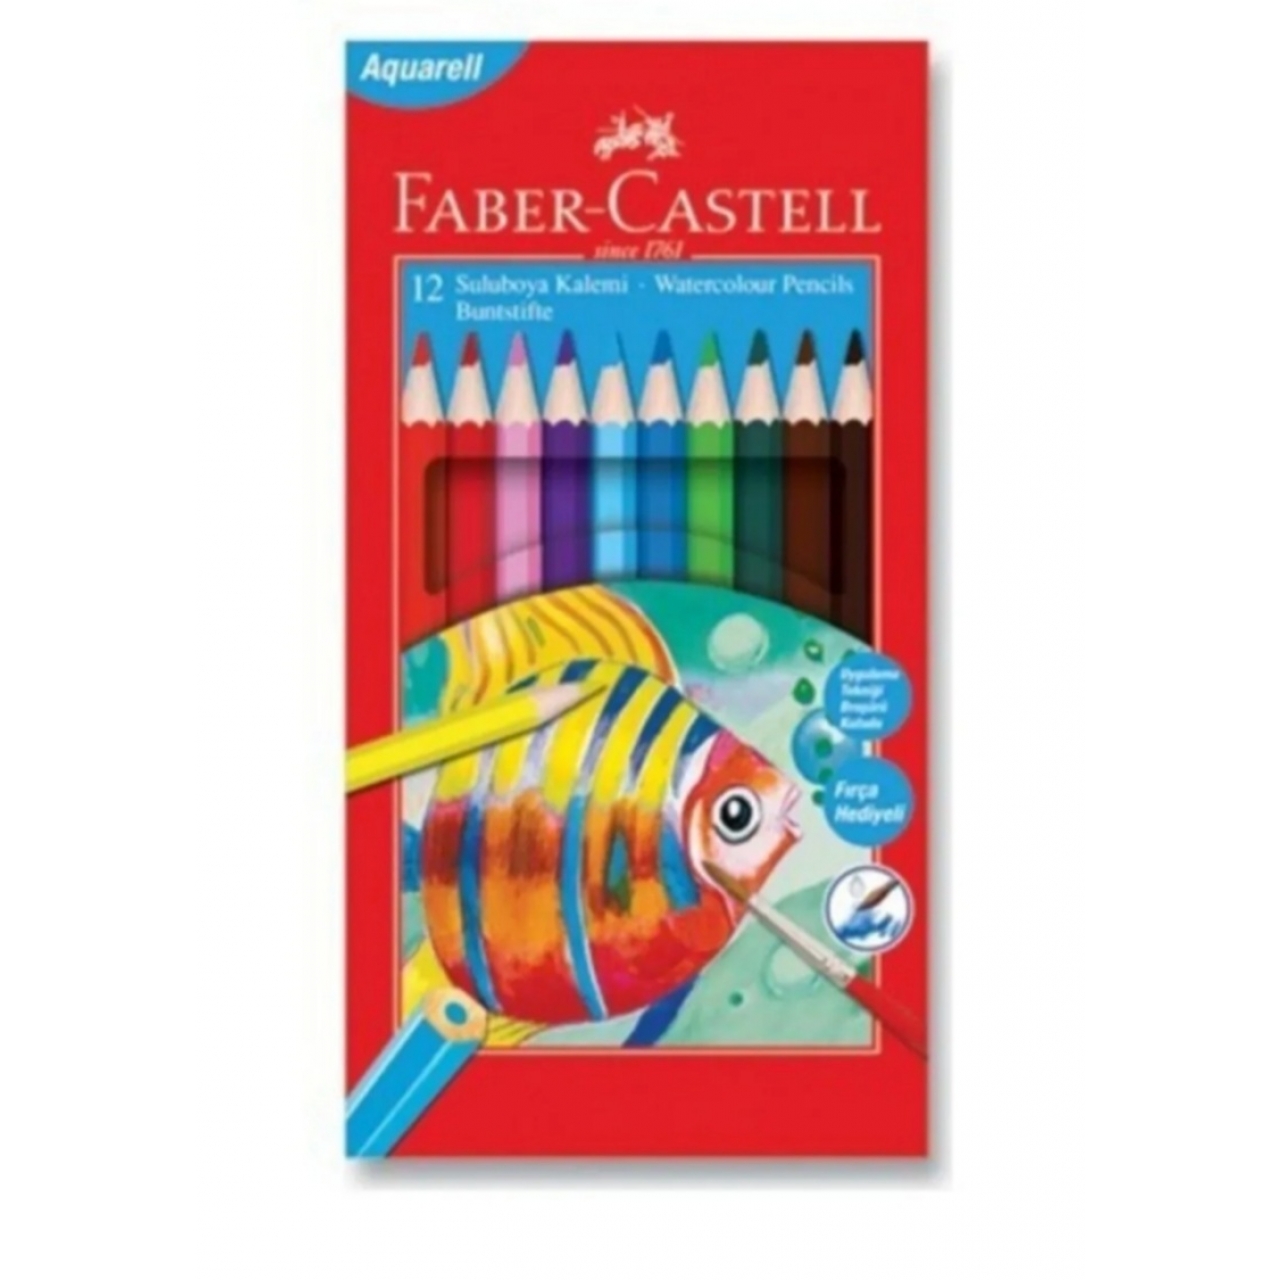 Faber-Castell Aquarell 12 Suluboya Kalemi